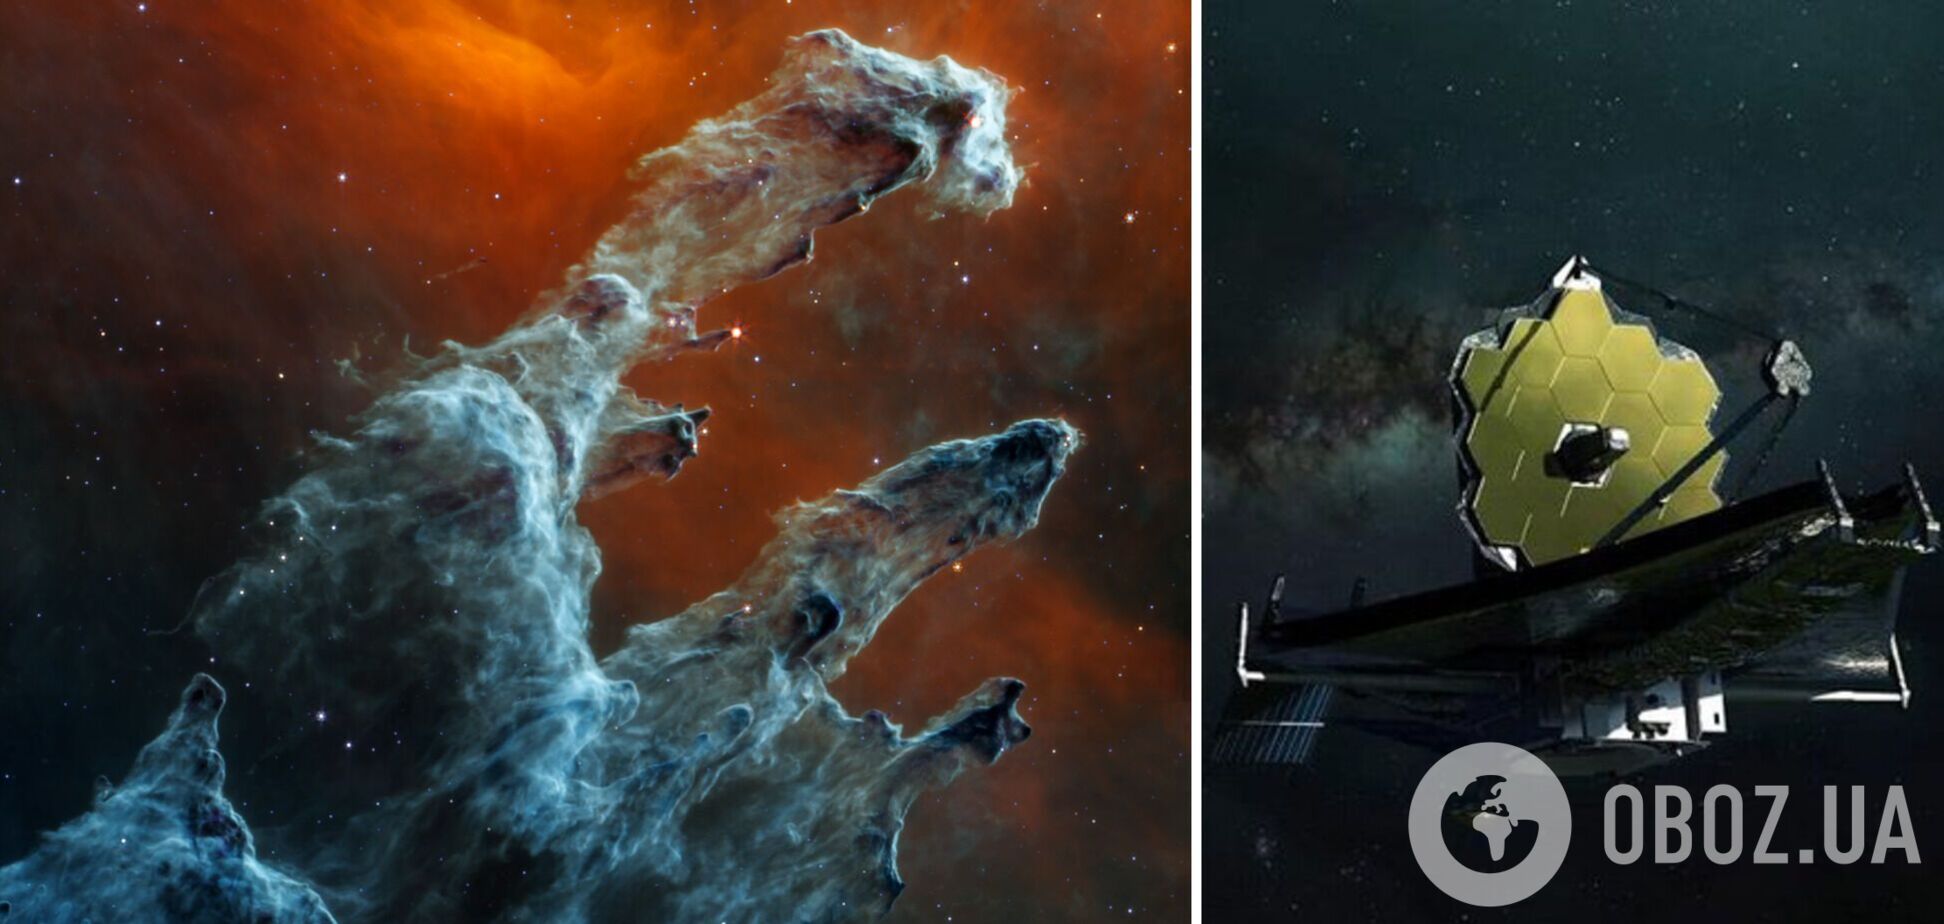 В NASA опублікували друге зображення знаменитих 'Стовпів творіння', зроблене супертелескопом 'Джеймс Вебб'. Фото